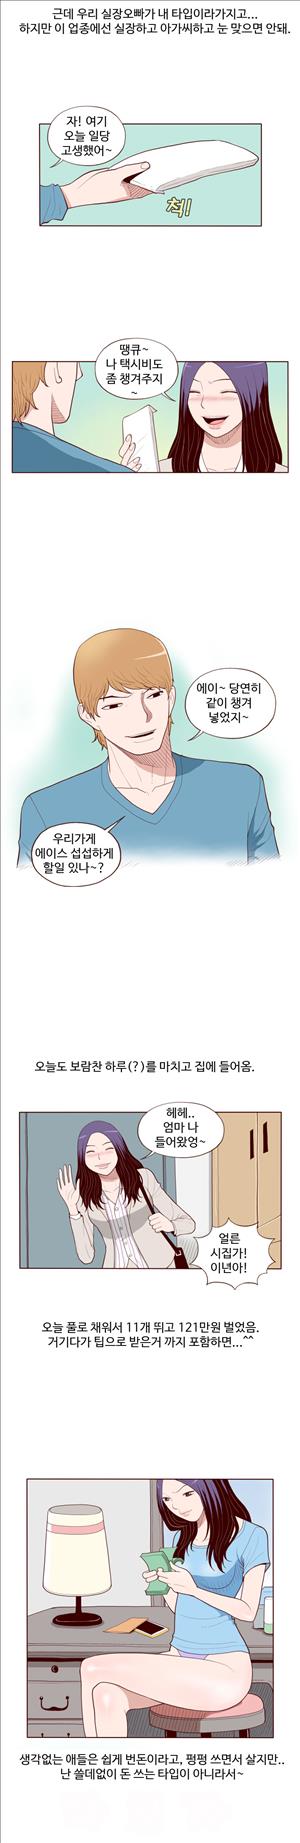 미색 - 썰만화 시즌4 50화 - 오피녀의 비밀(상)_5